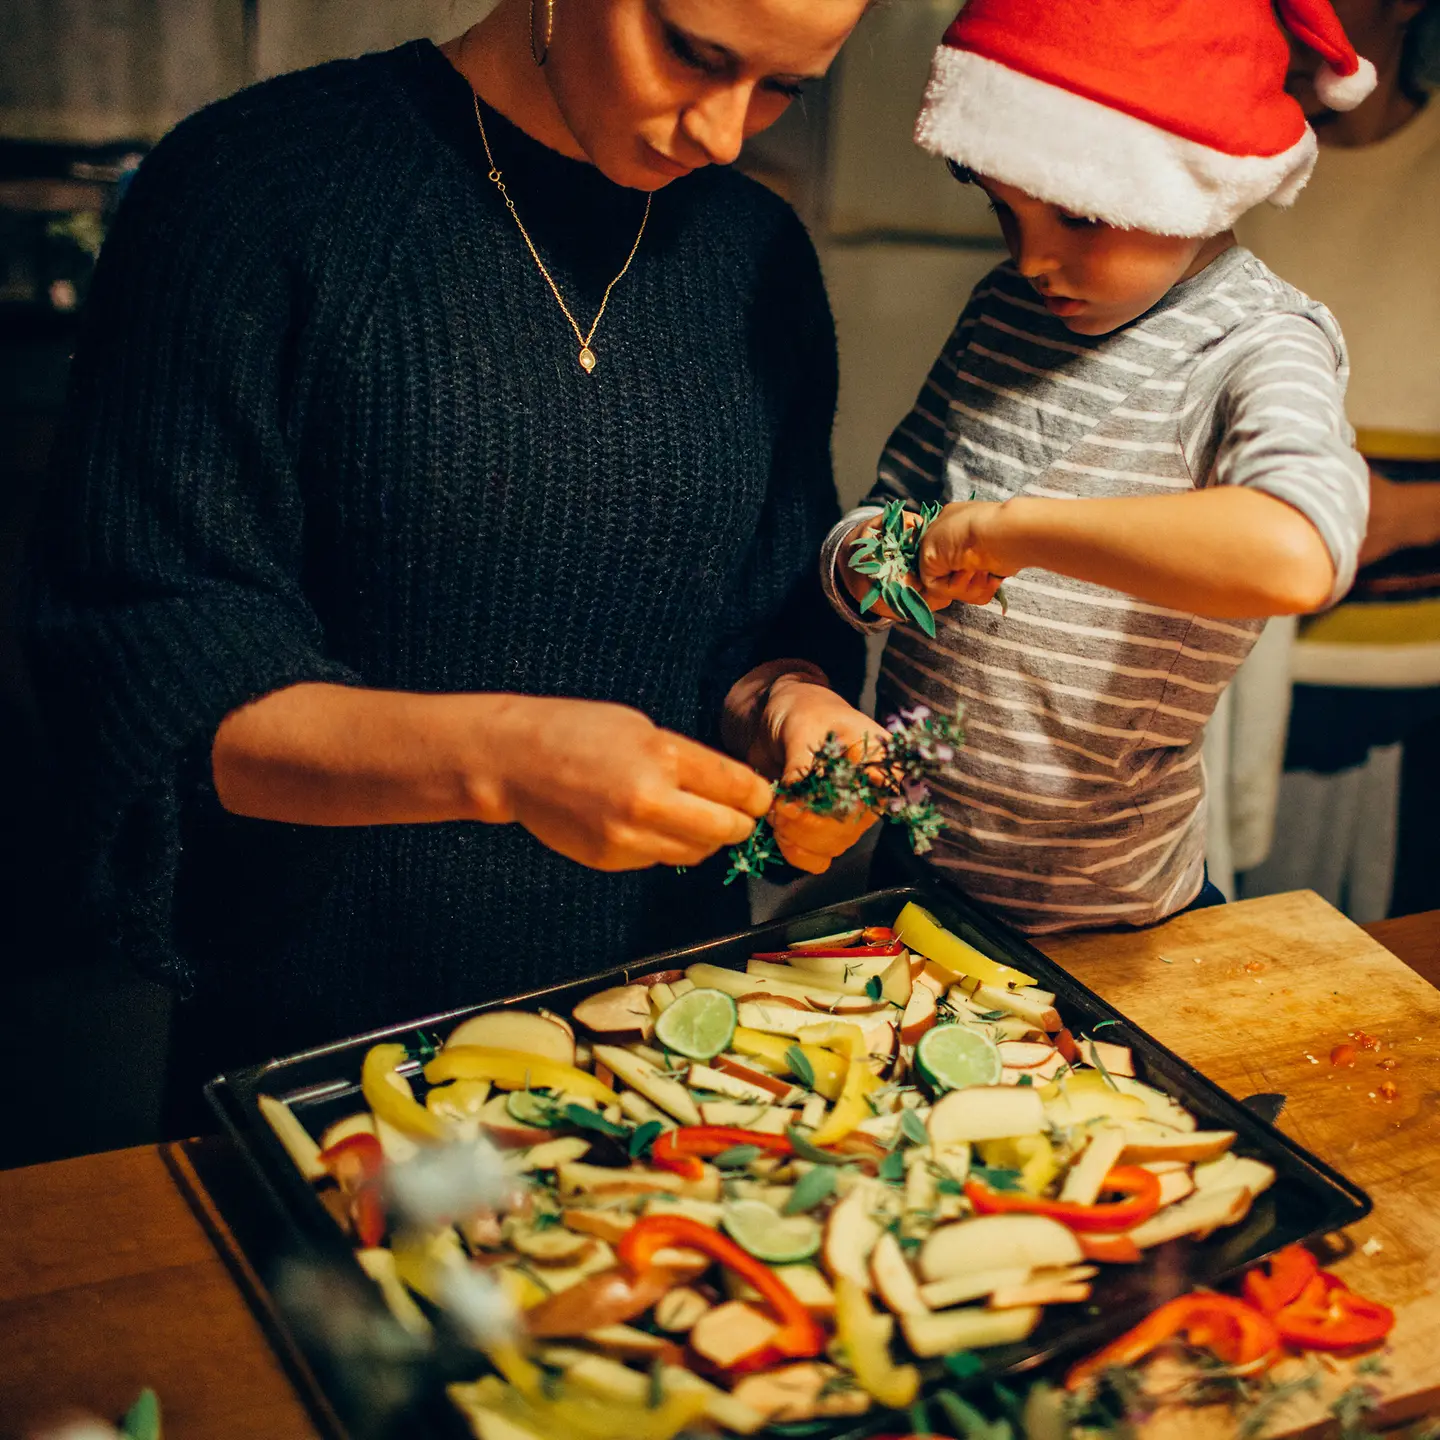 Eine Frau und ein junge bereiten ein gesundes Weihnachtsessen zu